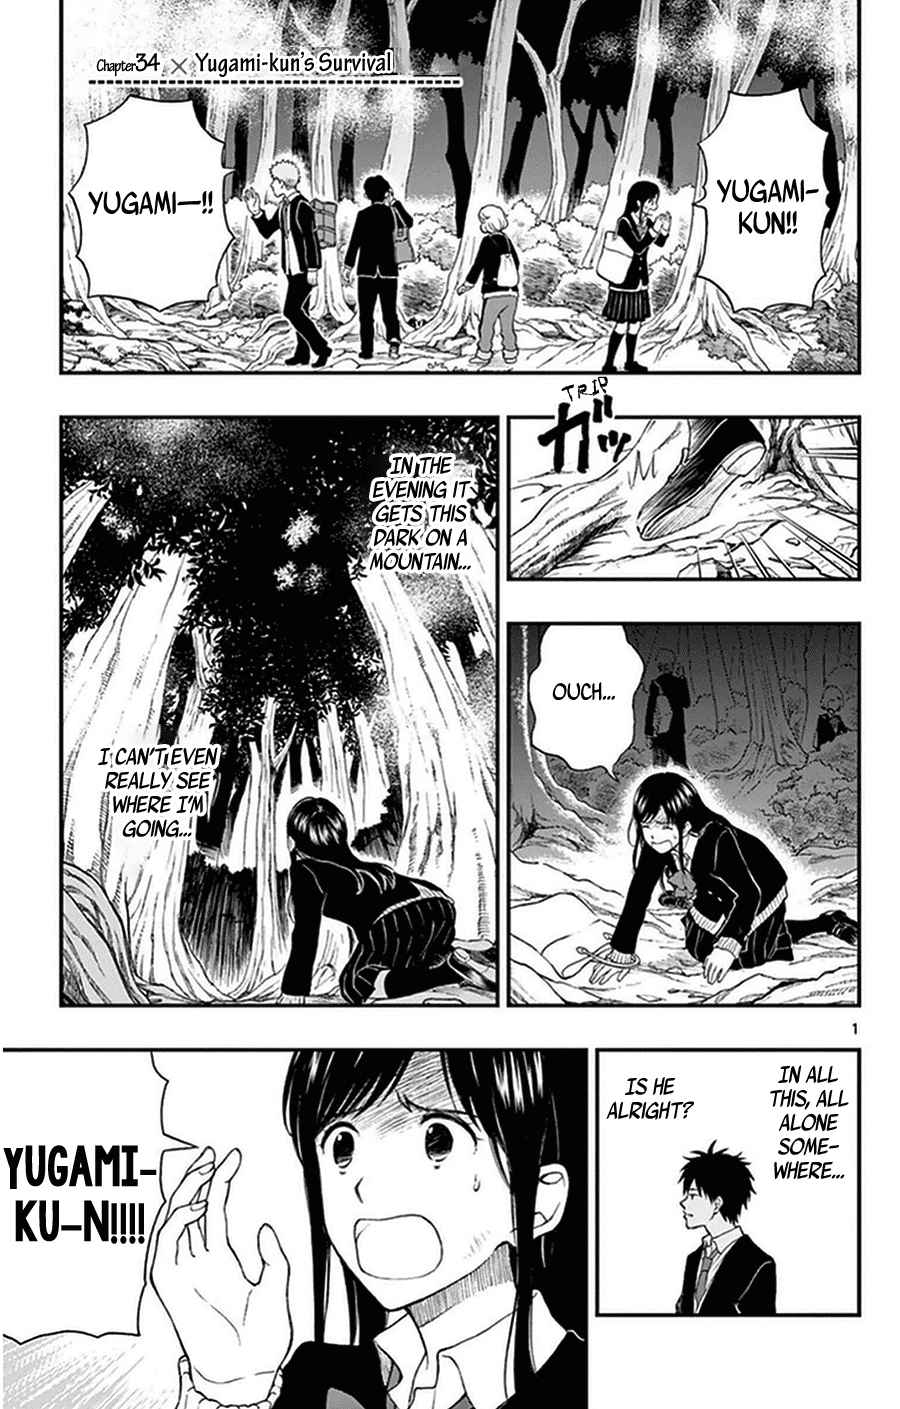 Yugami kun ni wa Tomodachi ga Inai Vol. 7 Ch. 34 Yugami kun's Survival